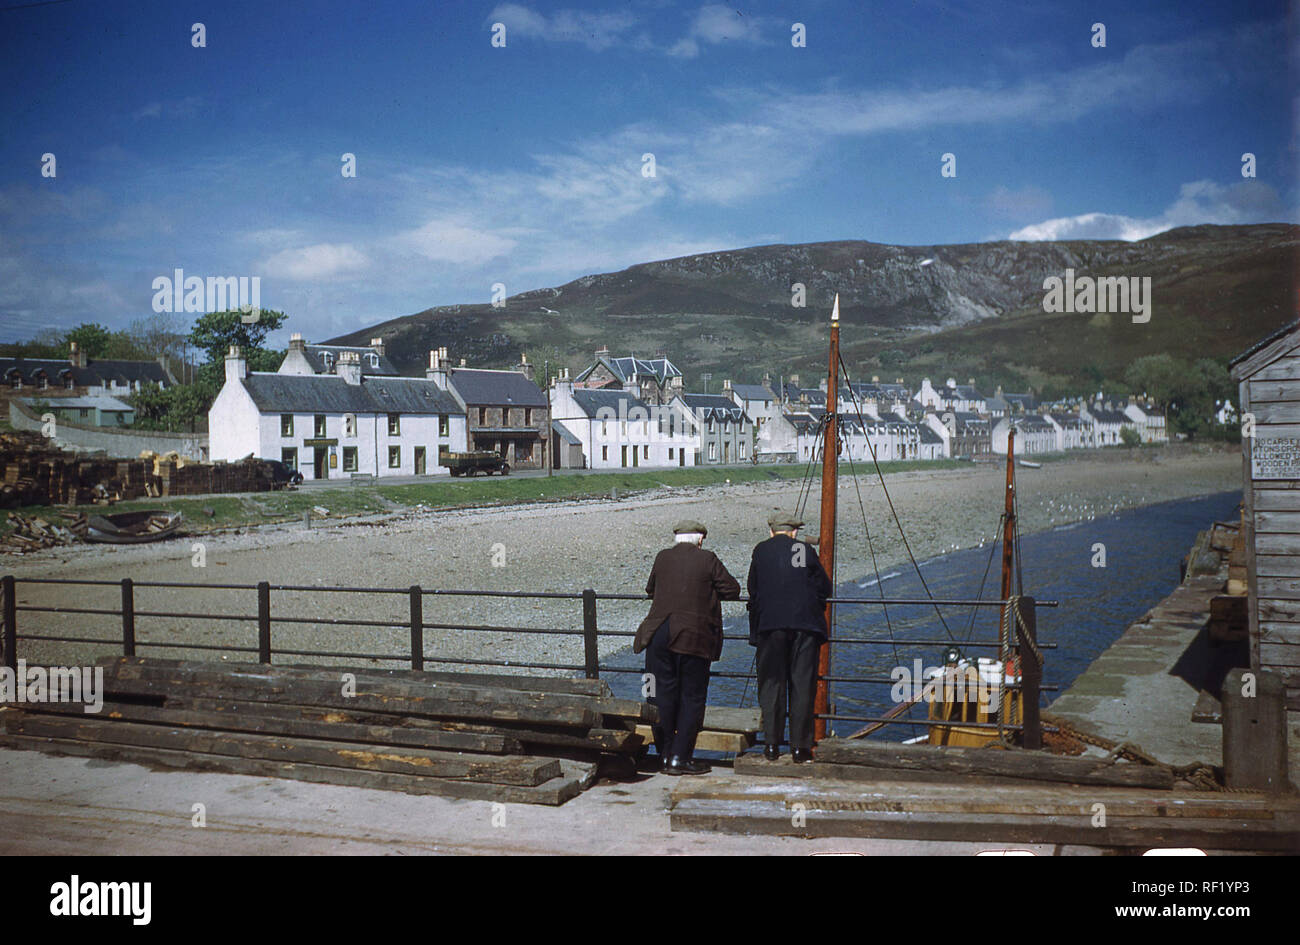 1960, historische, zwei Männer stehen auf einer Brücke am Hafen rückwärts suchen Dorf von Ullapool, Highlands, Schottland, UK auf Hochland. Stockfoto